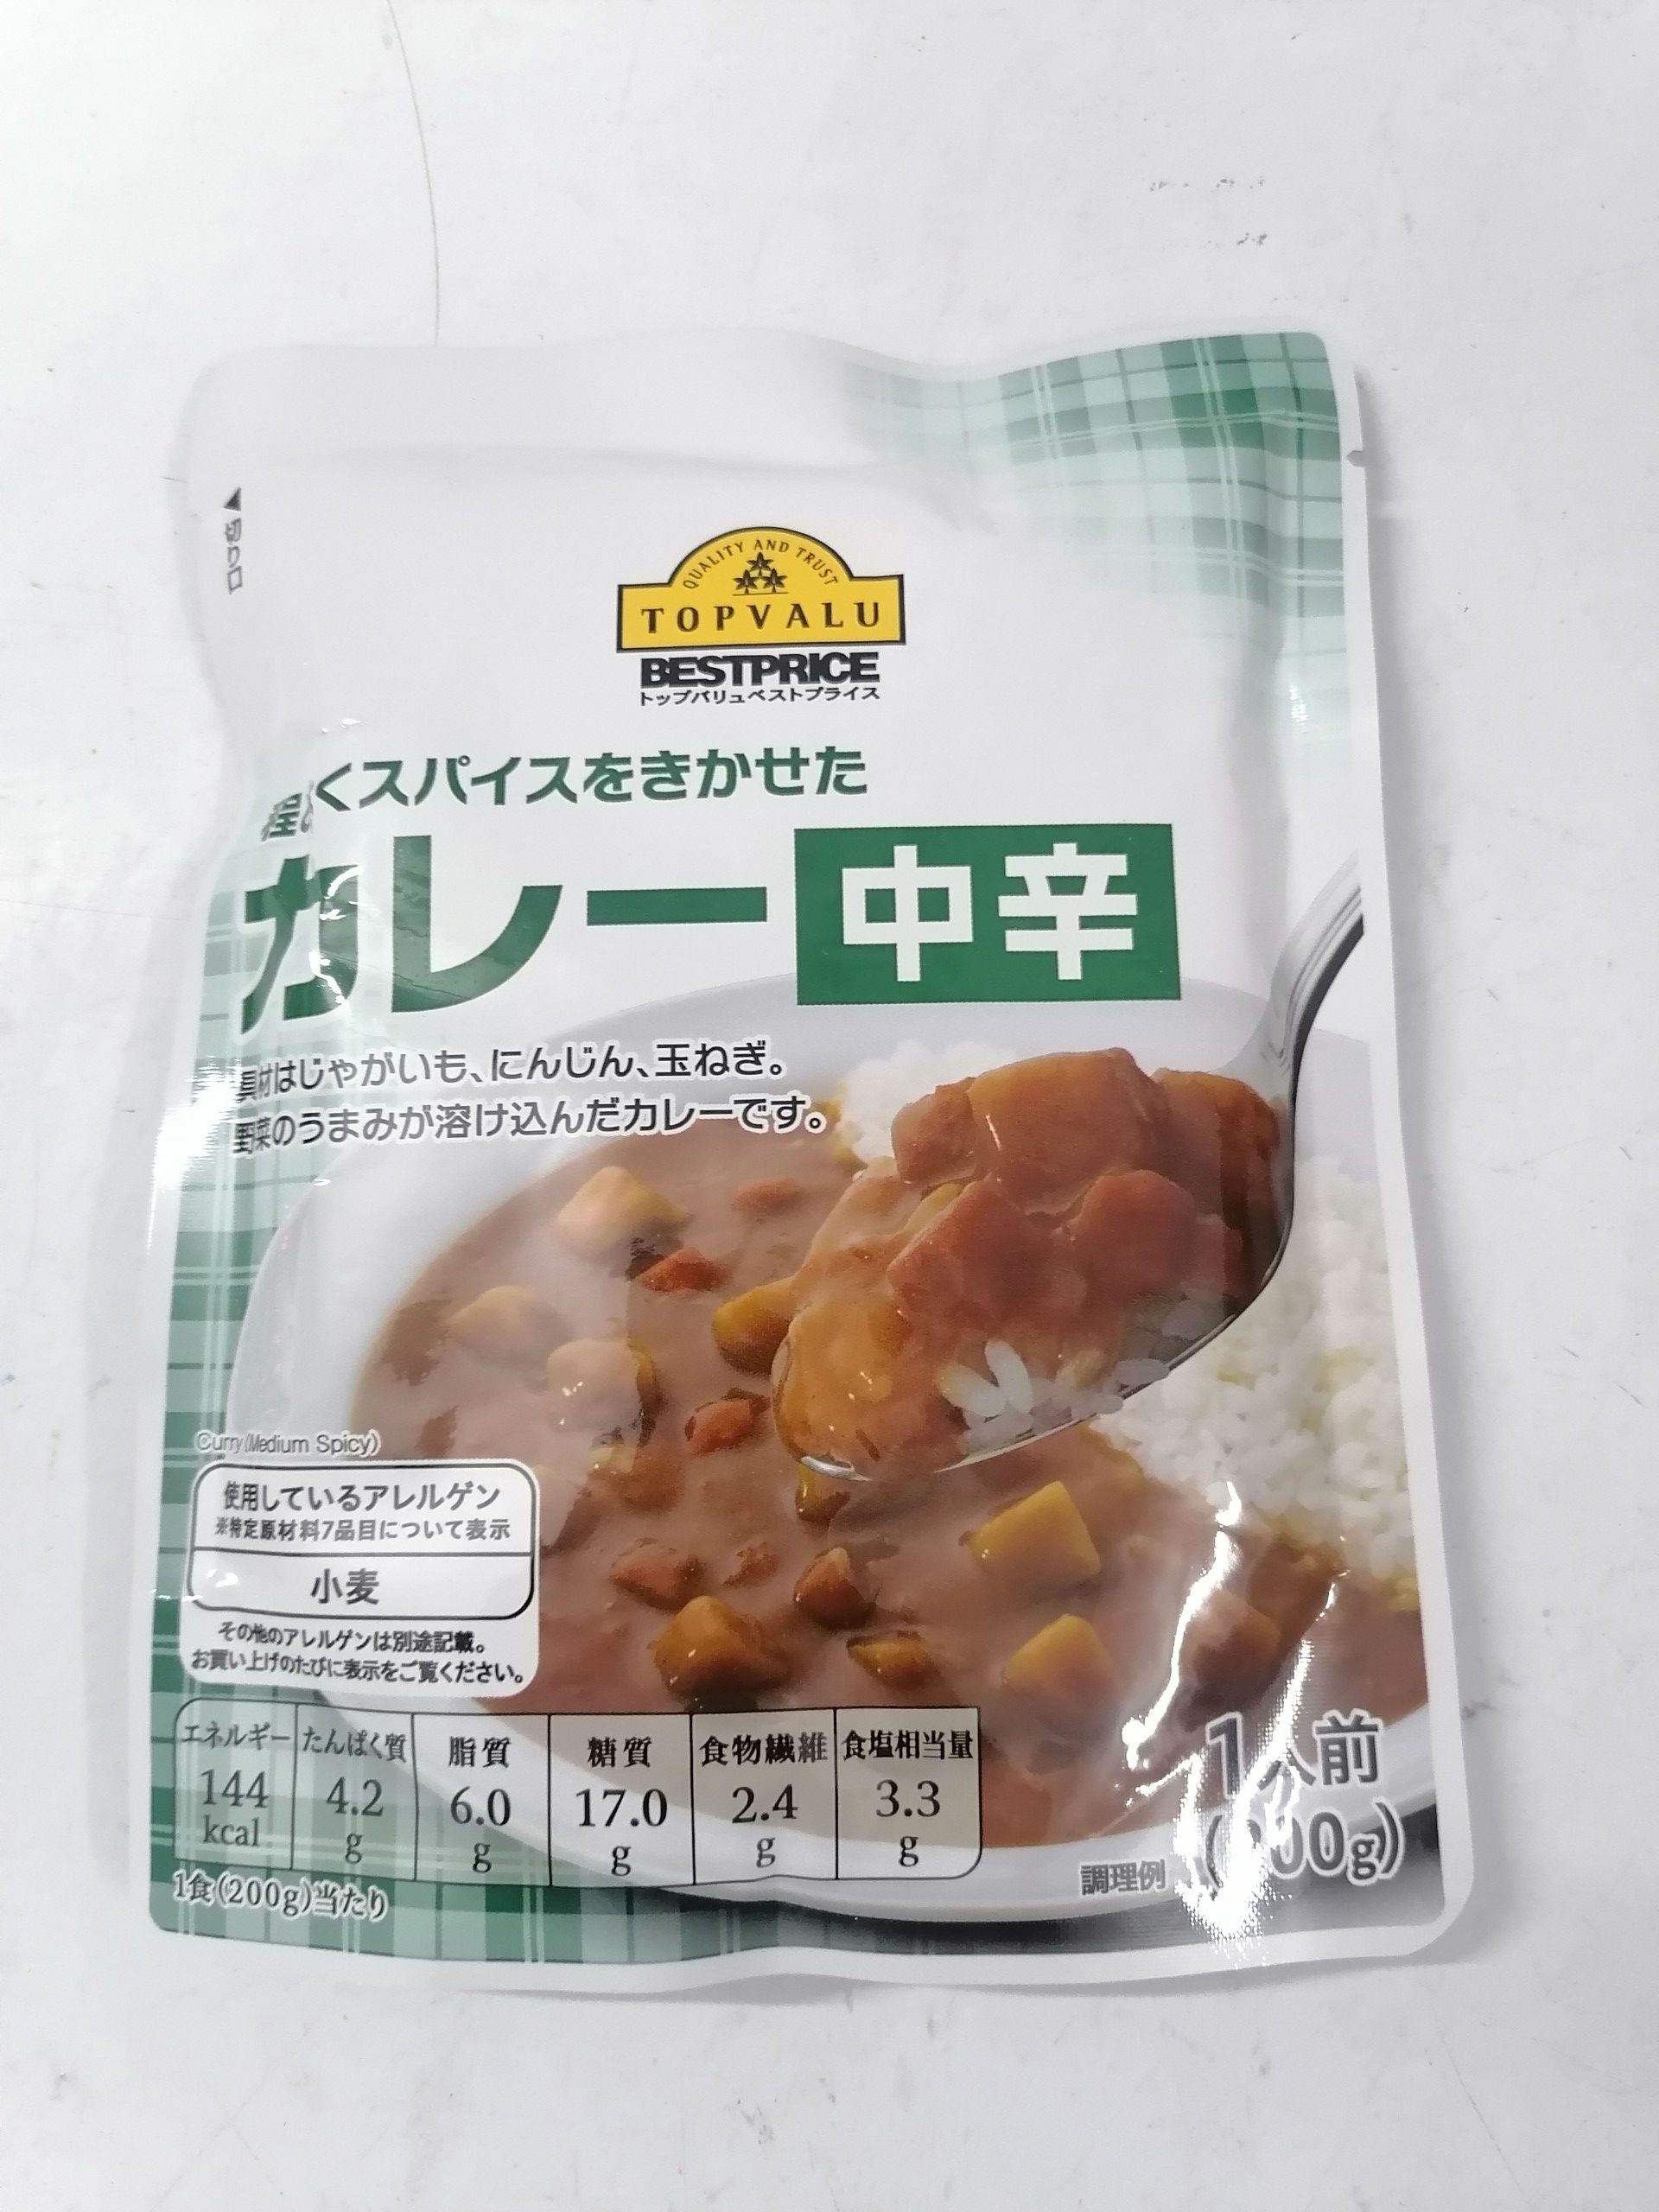 [200g – Túi – XANH LÁ] Xốt Cà ri vị cay vừa [Japan] TOPVALU (Medium Hot) Curry Sauce (btn-hk)